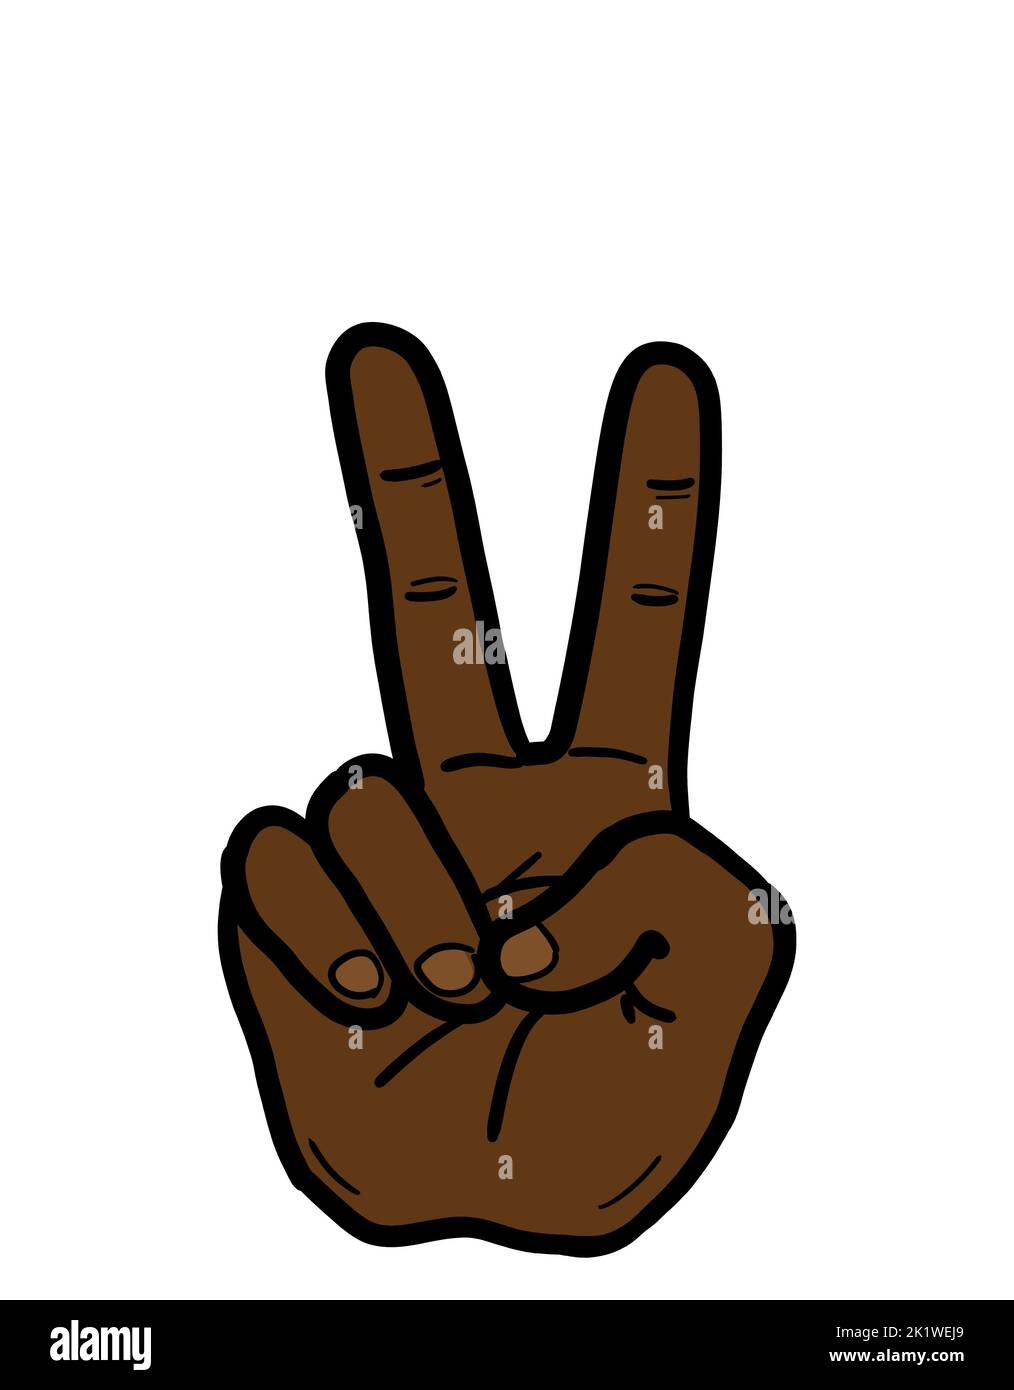 Le vite nere contano. Il segno V è un gesto di mano dell'etnia afro-americana come simbolo di vittoria, pace, successo e antirazzismo. Foto Stock